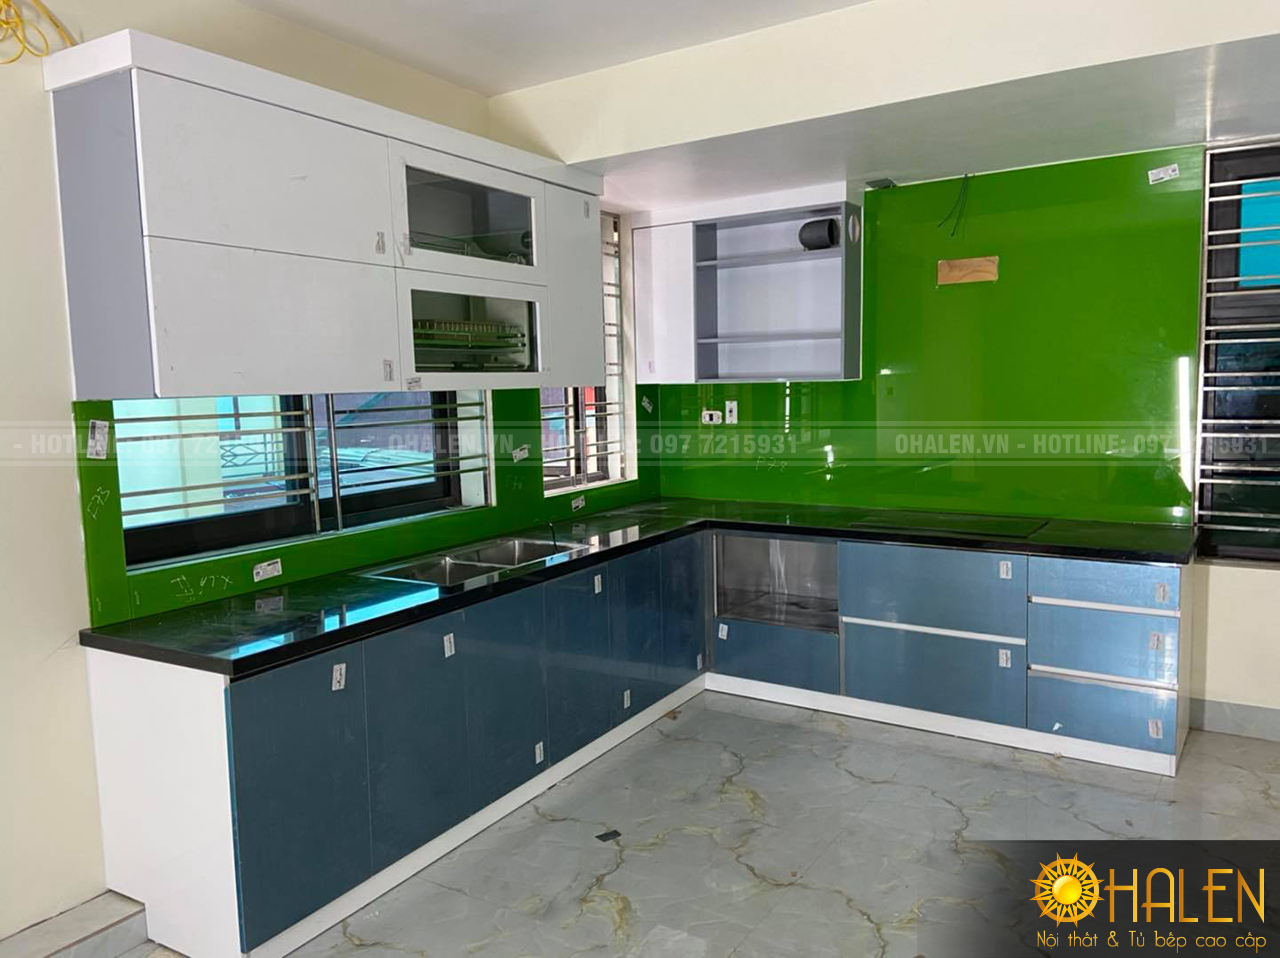 Thiết kế và thi công bộ tủ bếp chât liệu Acrylic bóng gương với điểm nhấn là kính ốp bếp màu xanh lá cây